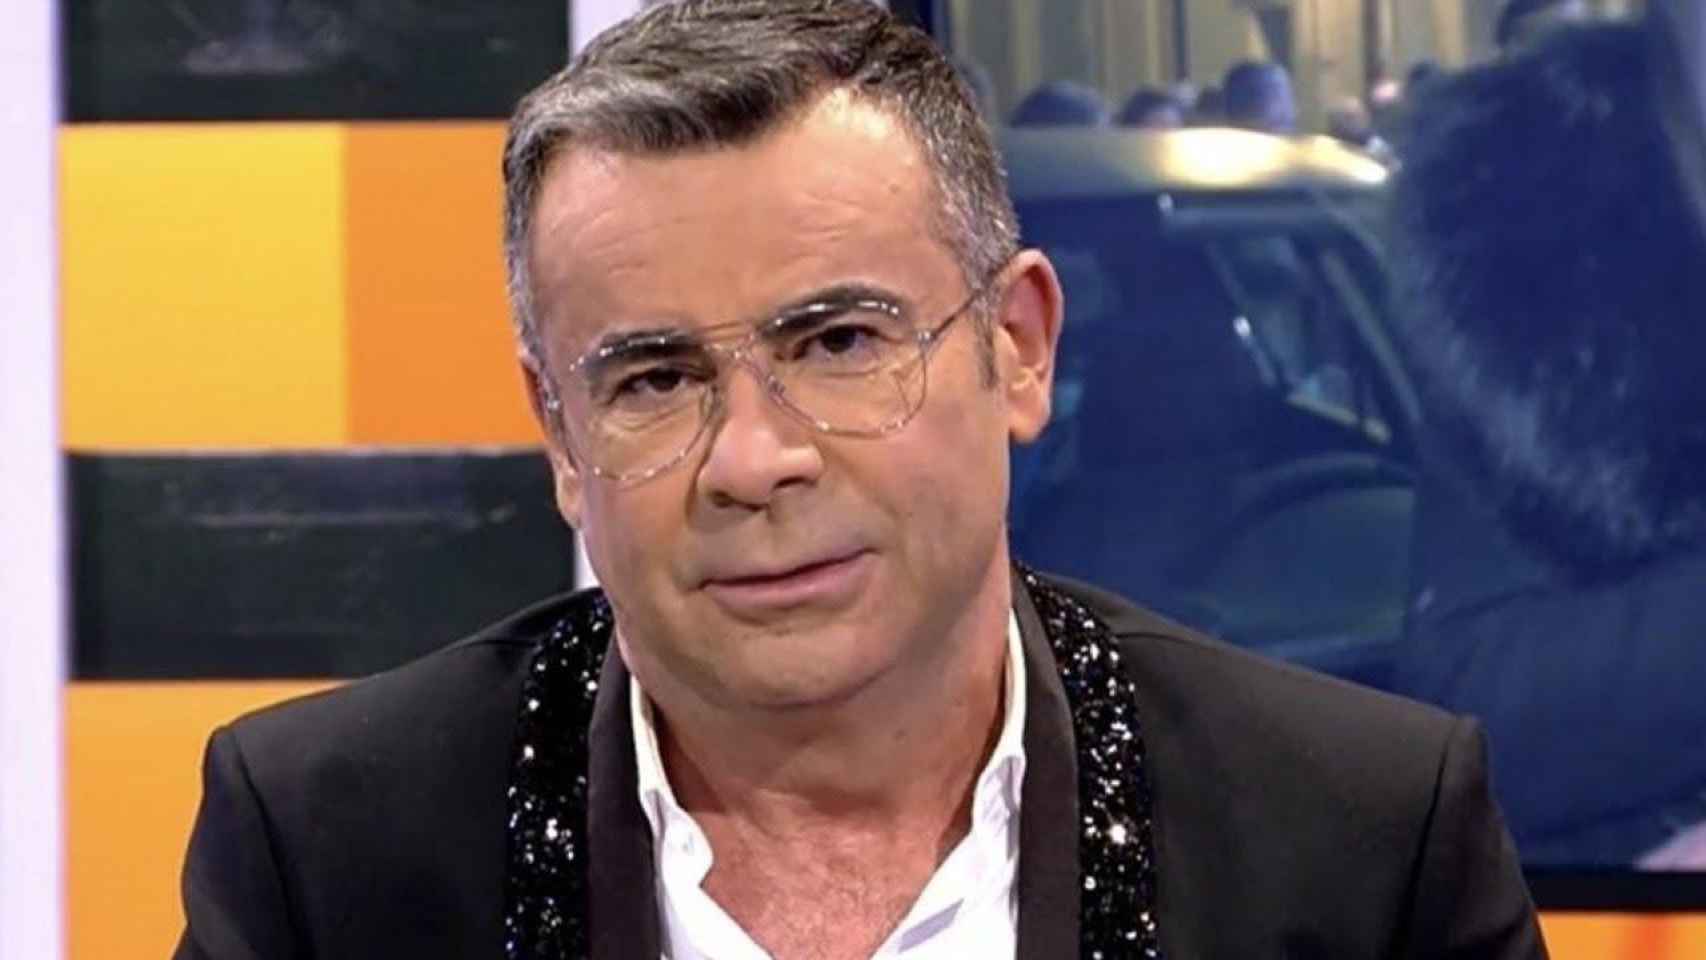 El presentador Jorge Javier Vázquez MEDIASET